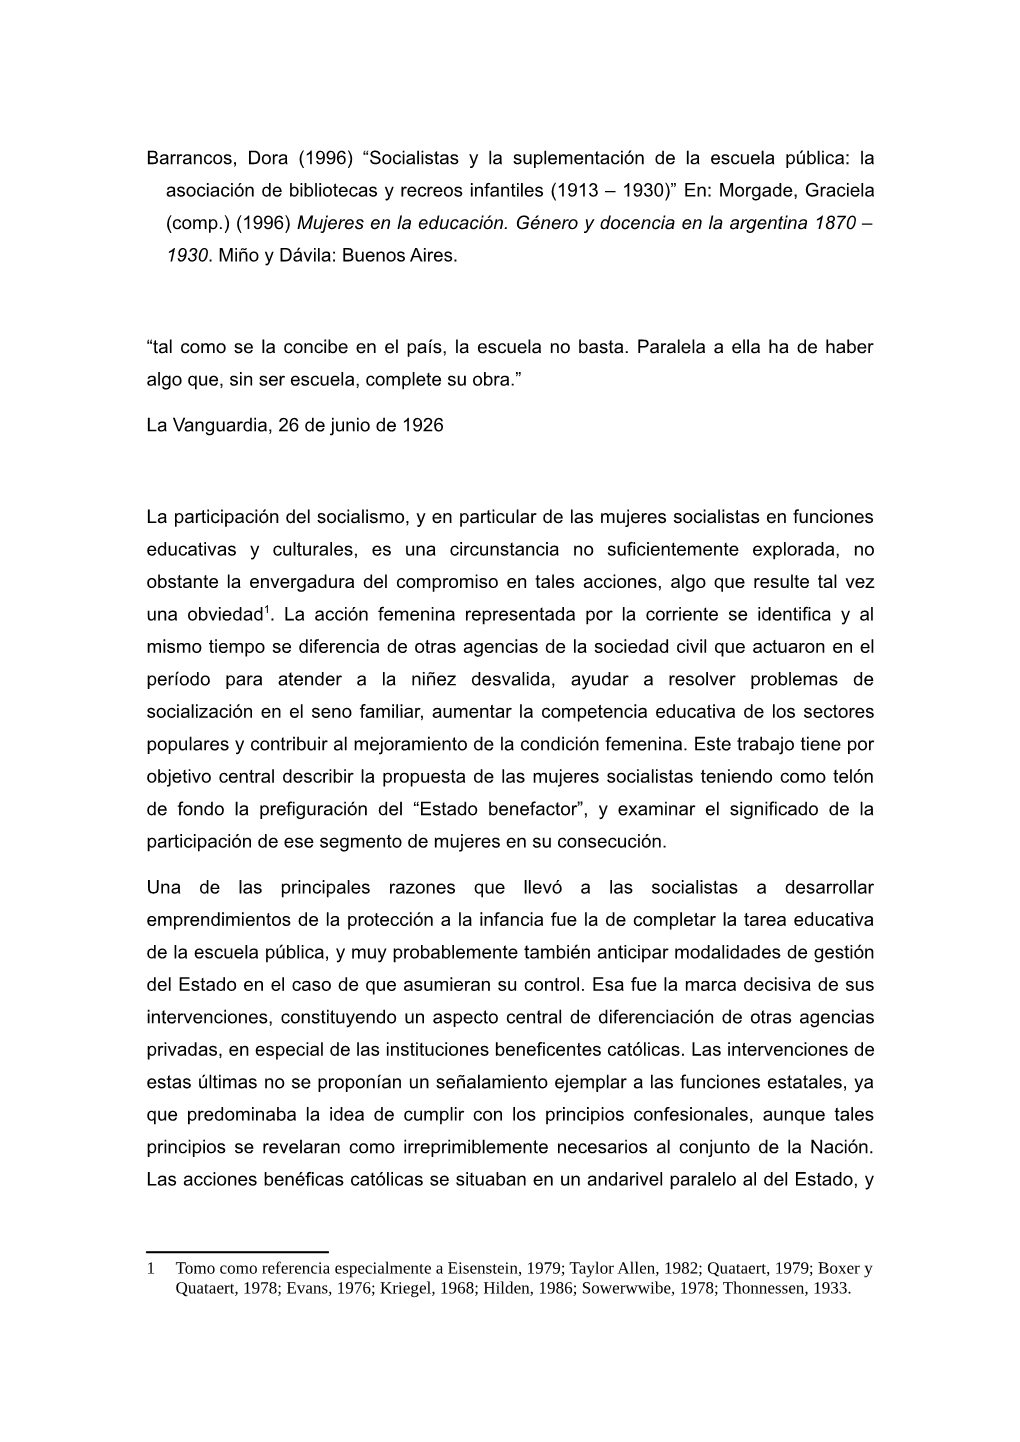 Barrancos, Dora (1996) “Socialistas Y La Suplementación De La Escuela